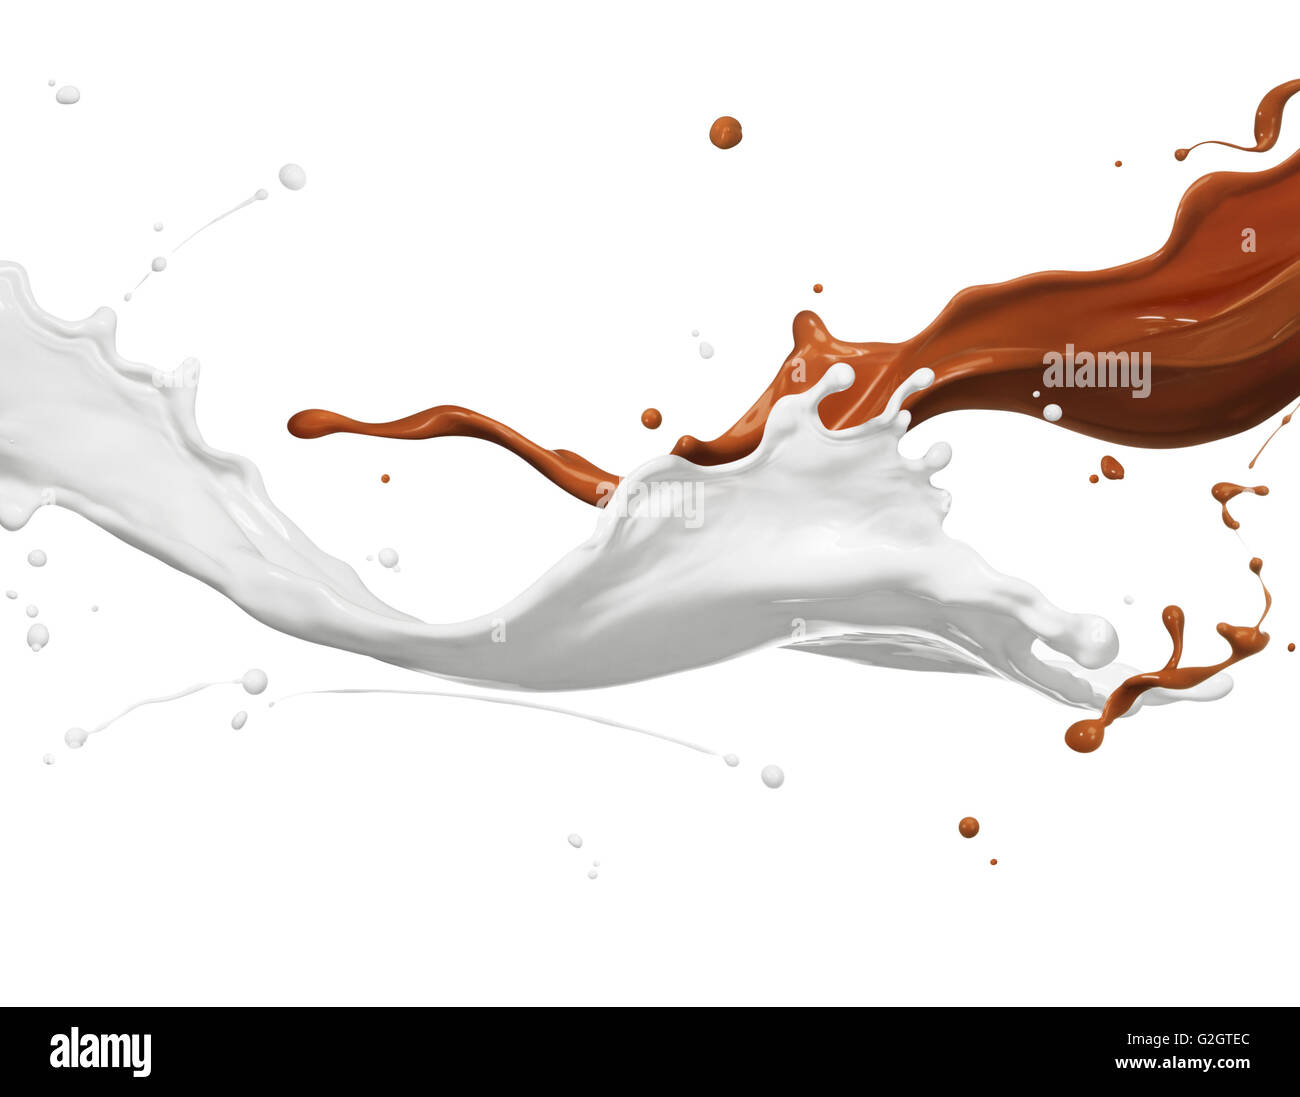 Schokolade und Milch spritzt gegen den weißen Hintergrund Stockfoto